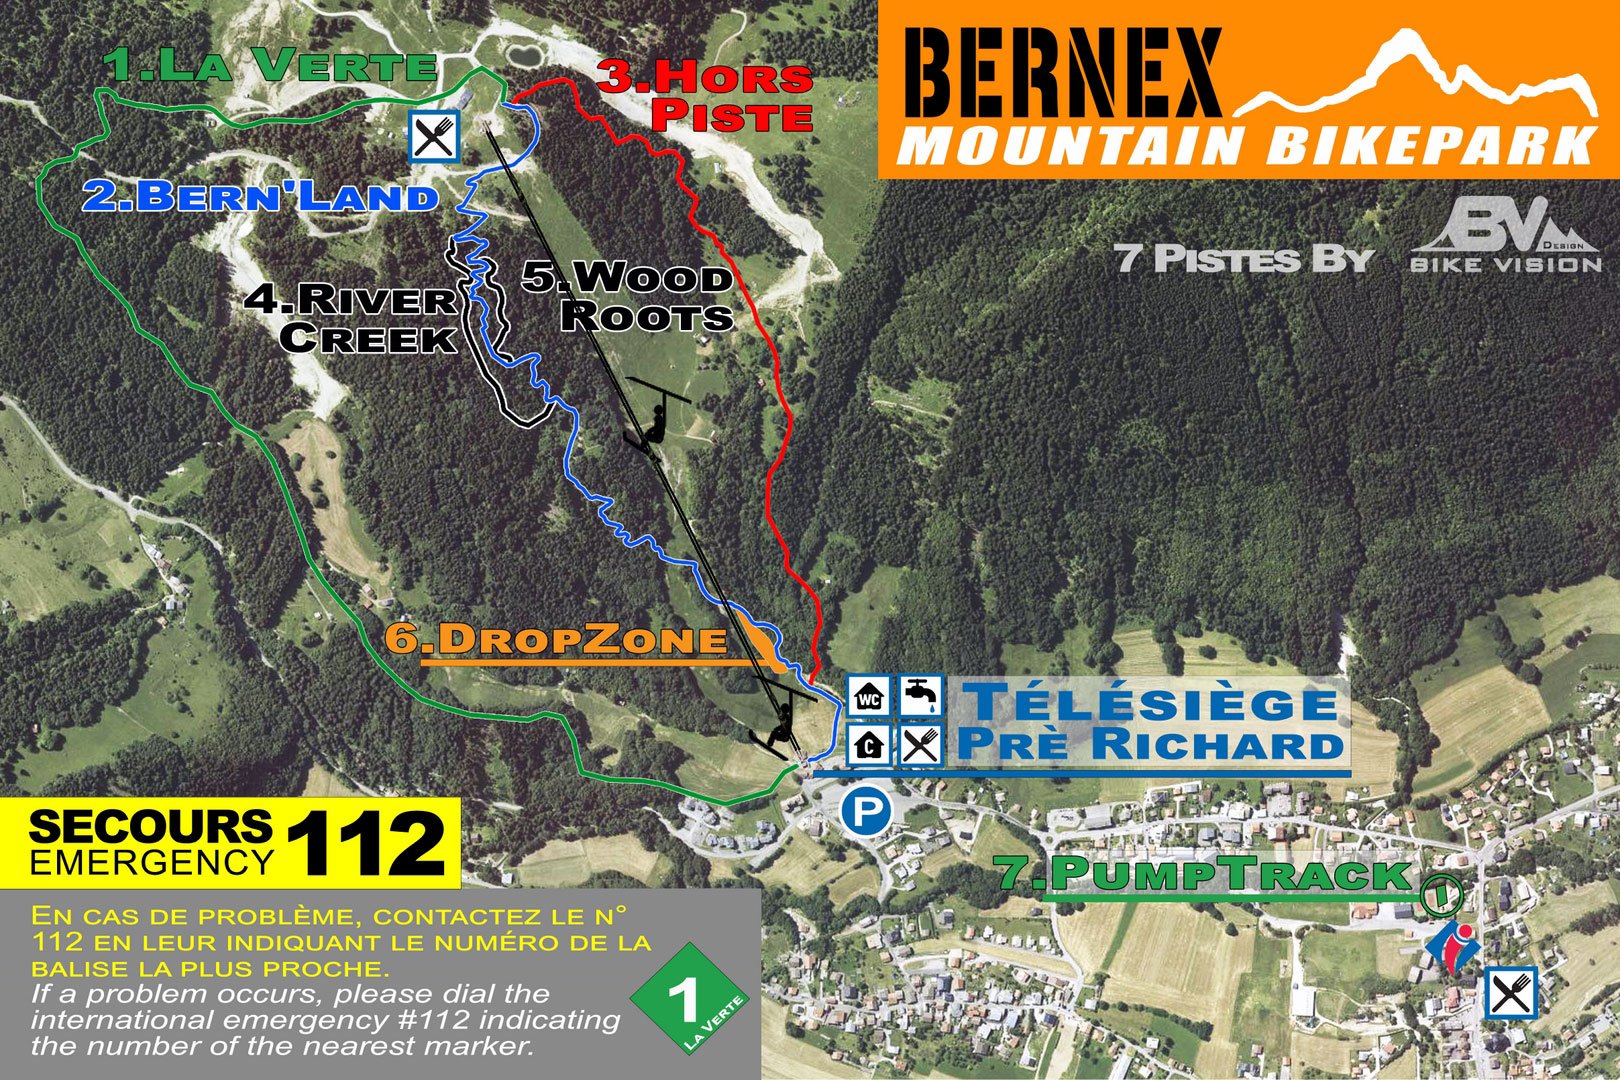 Plan du Bike Park VTT de Bernex